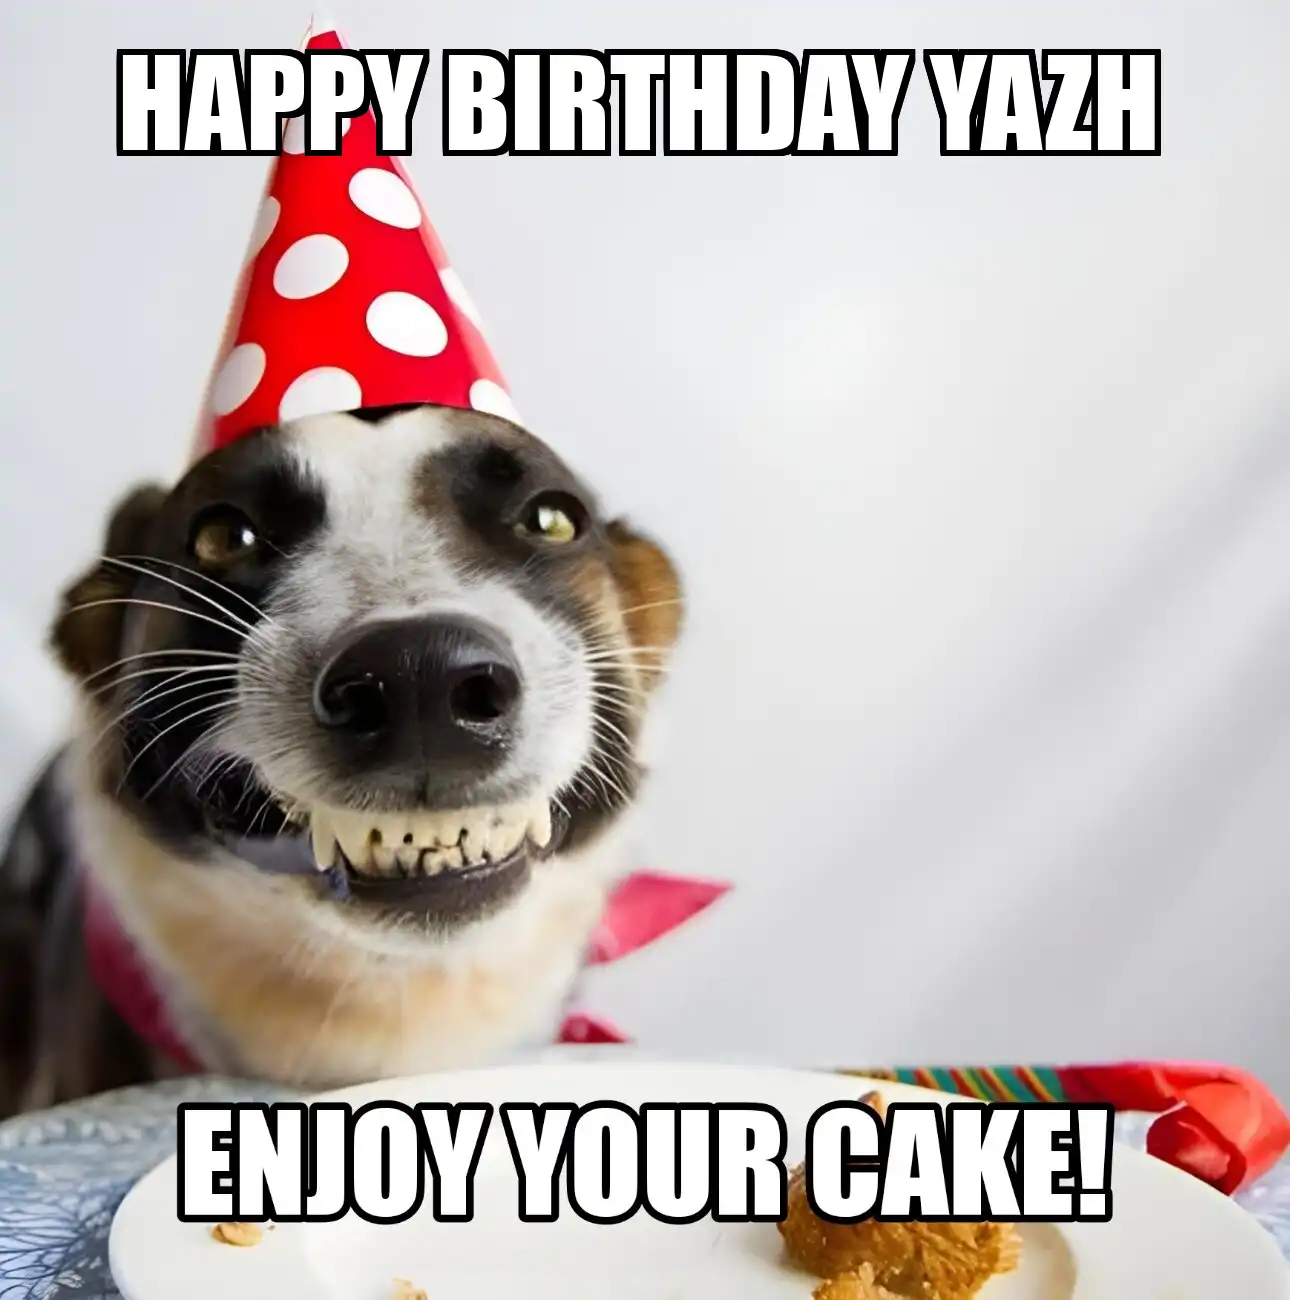 Happy Birthday Yazh Enjoy Your Cake Dog Meme